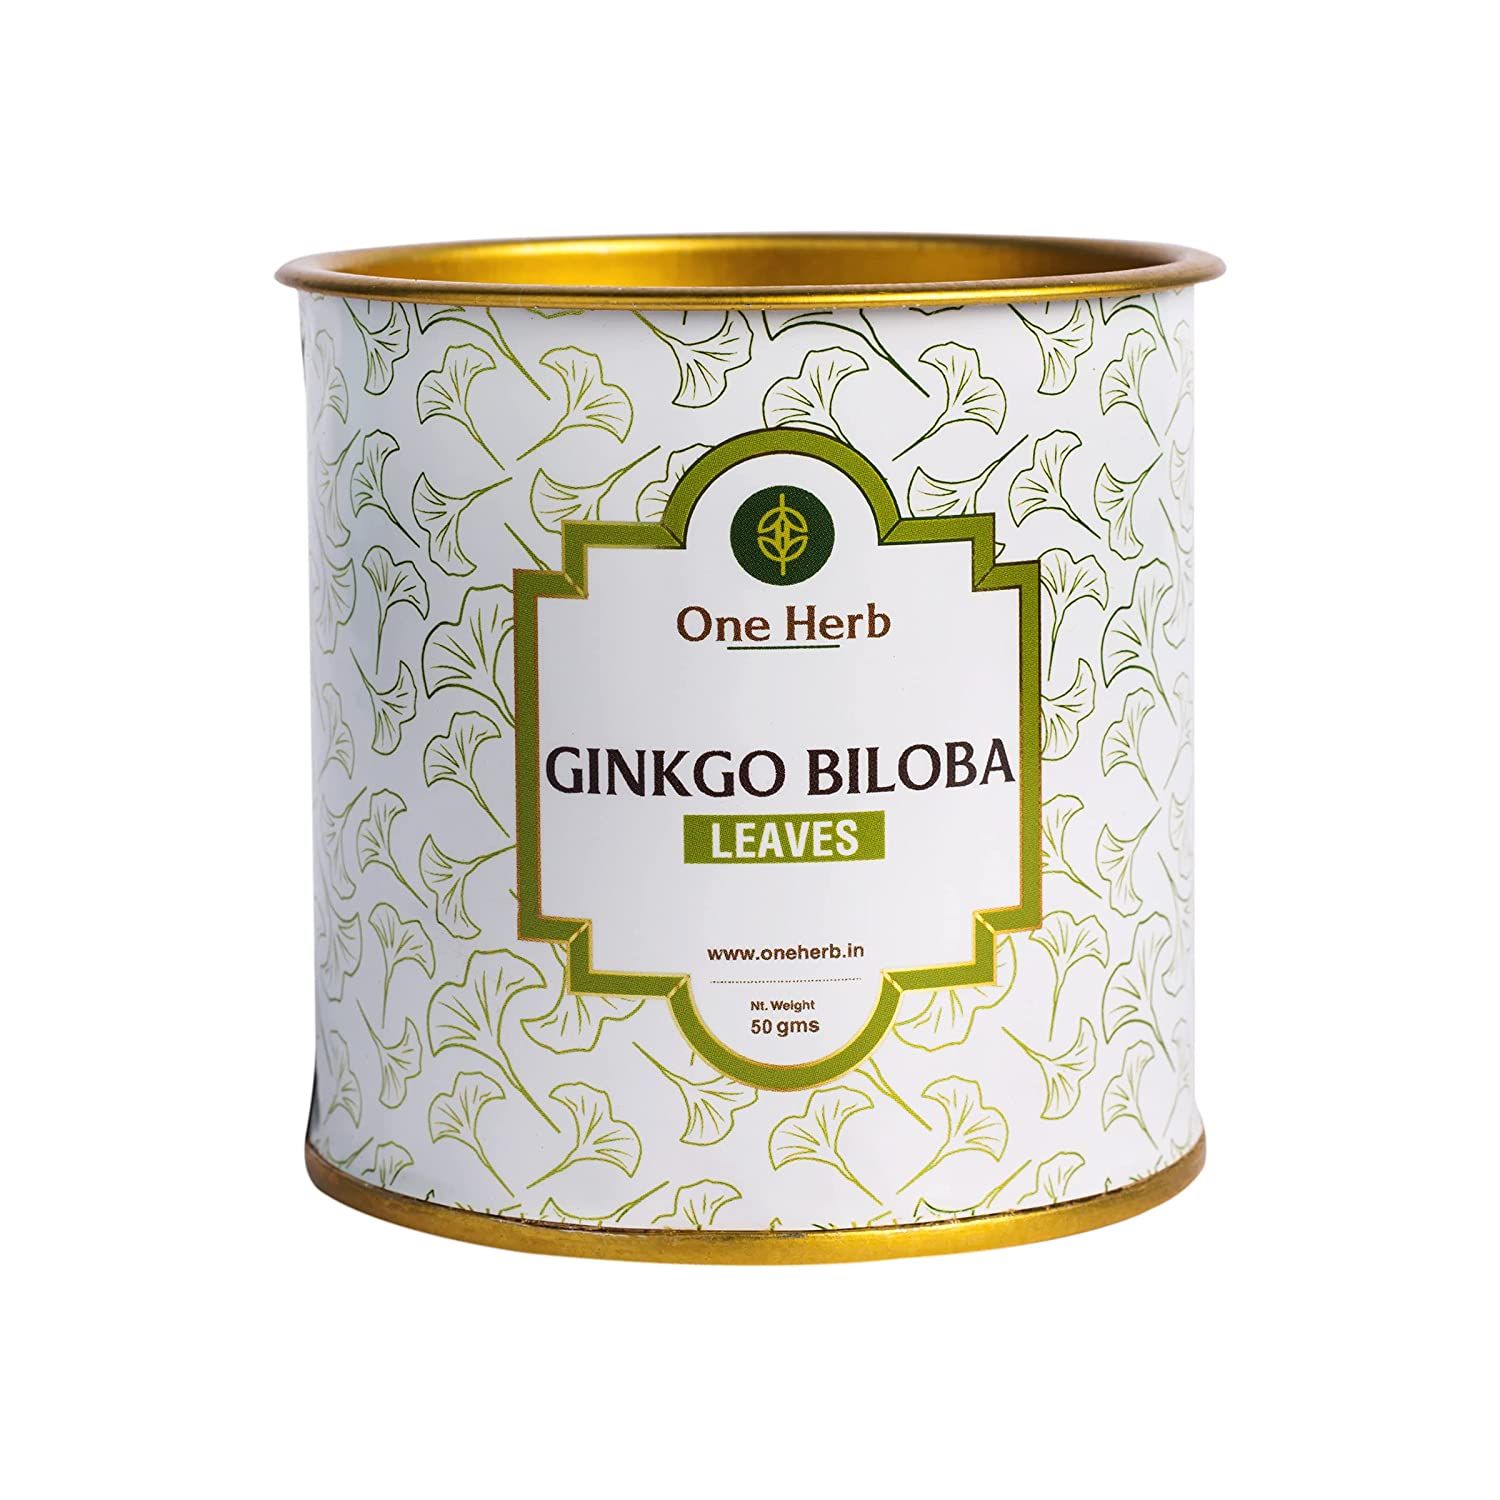 One Herb Ginkgo Biloba Tea Leaves Image